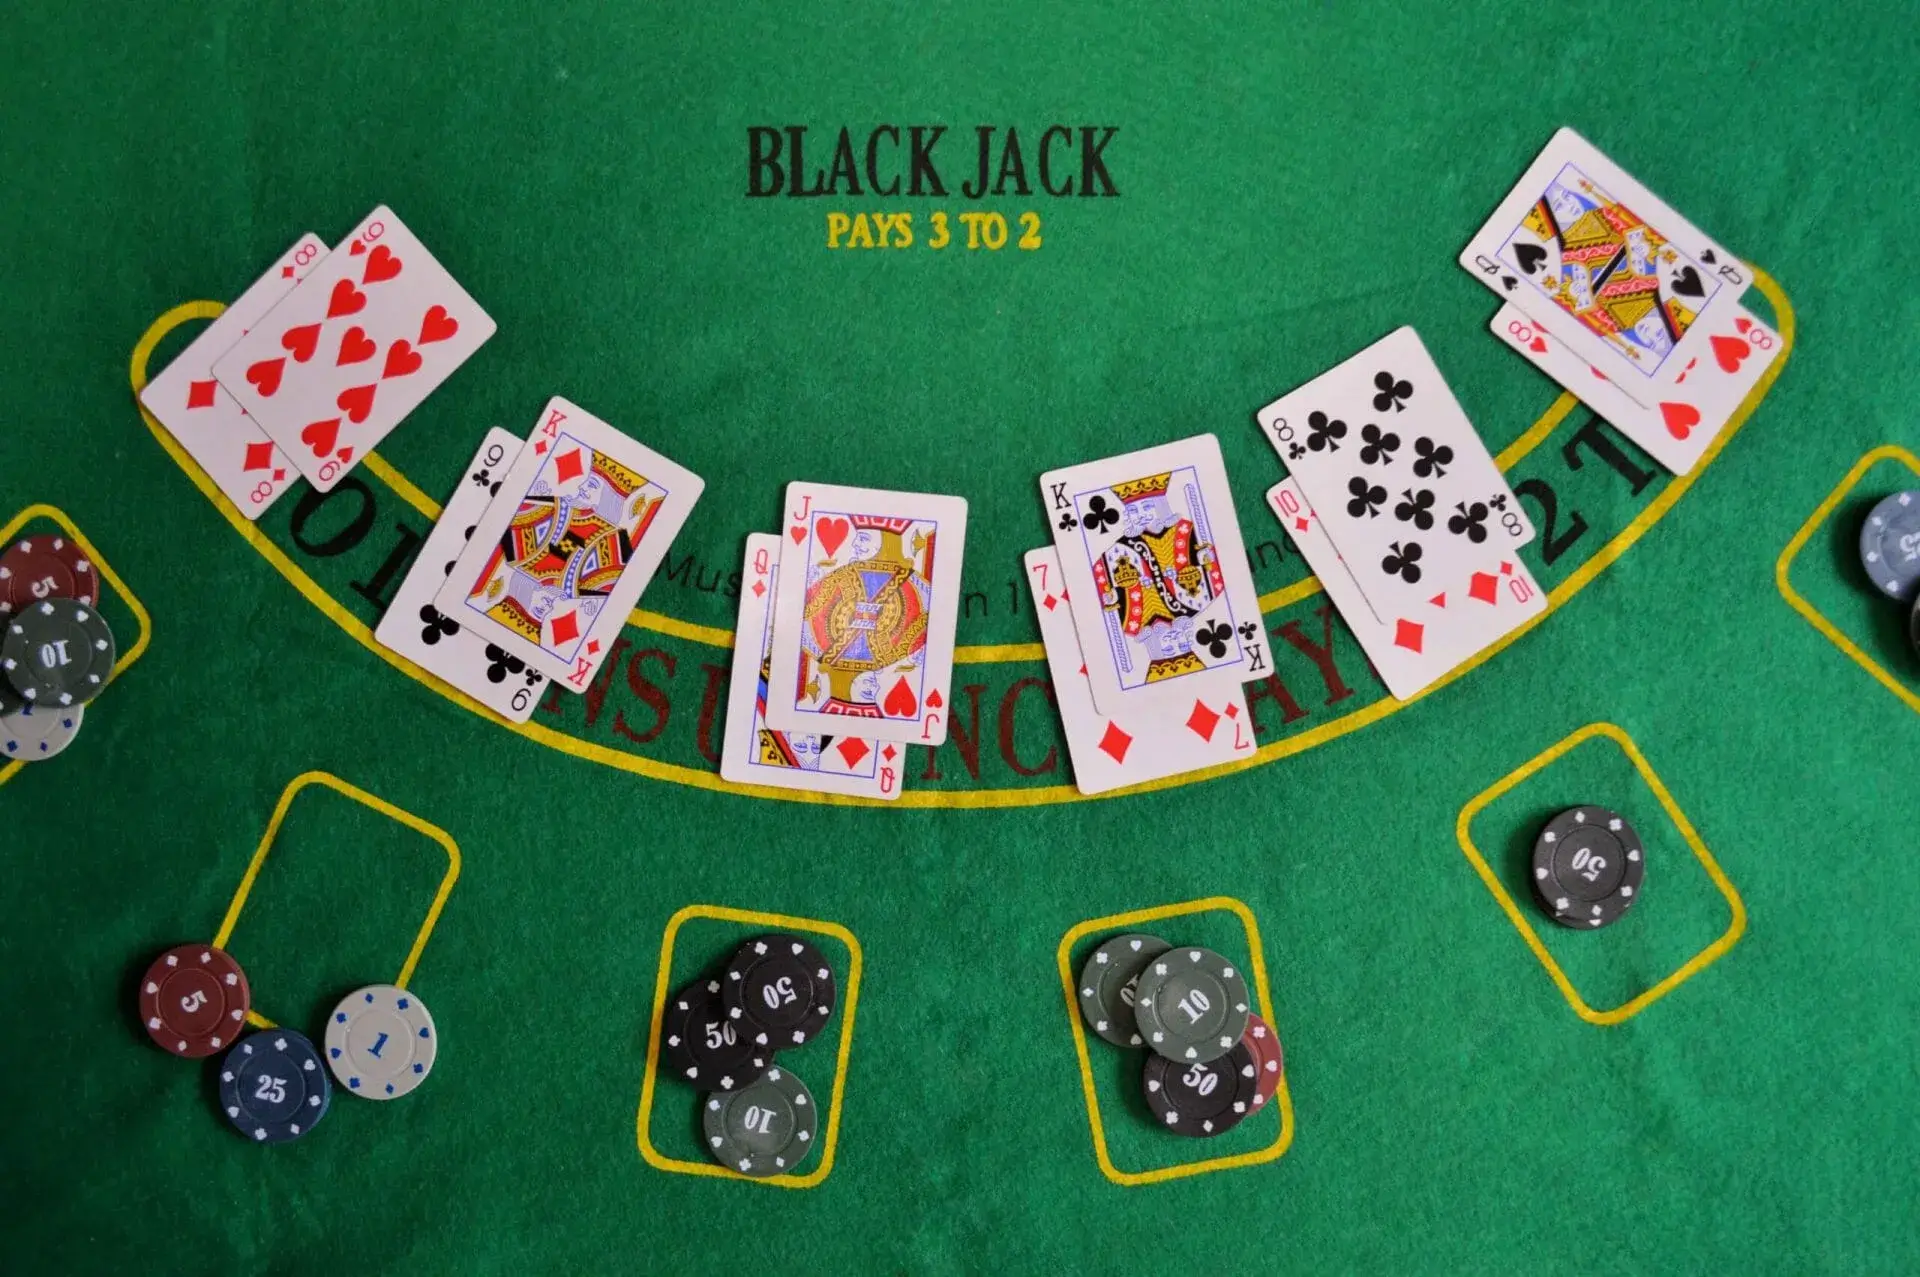 Blackjack tại 868vip là một trò chơi đánh bài phổ biến và hấp dẫn, được rất nhiều người yêu thích trong các sòng bạc trực tuyến.